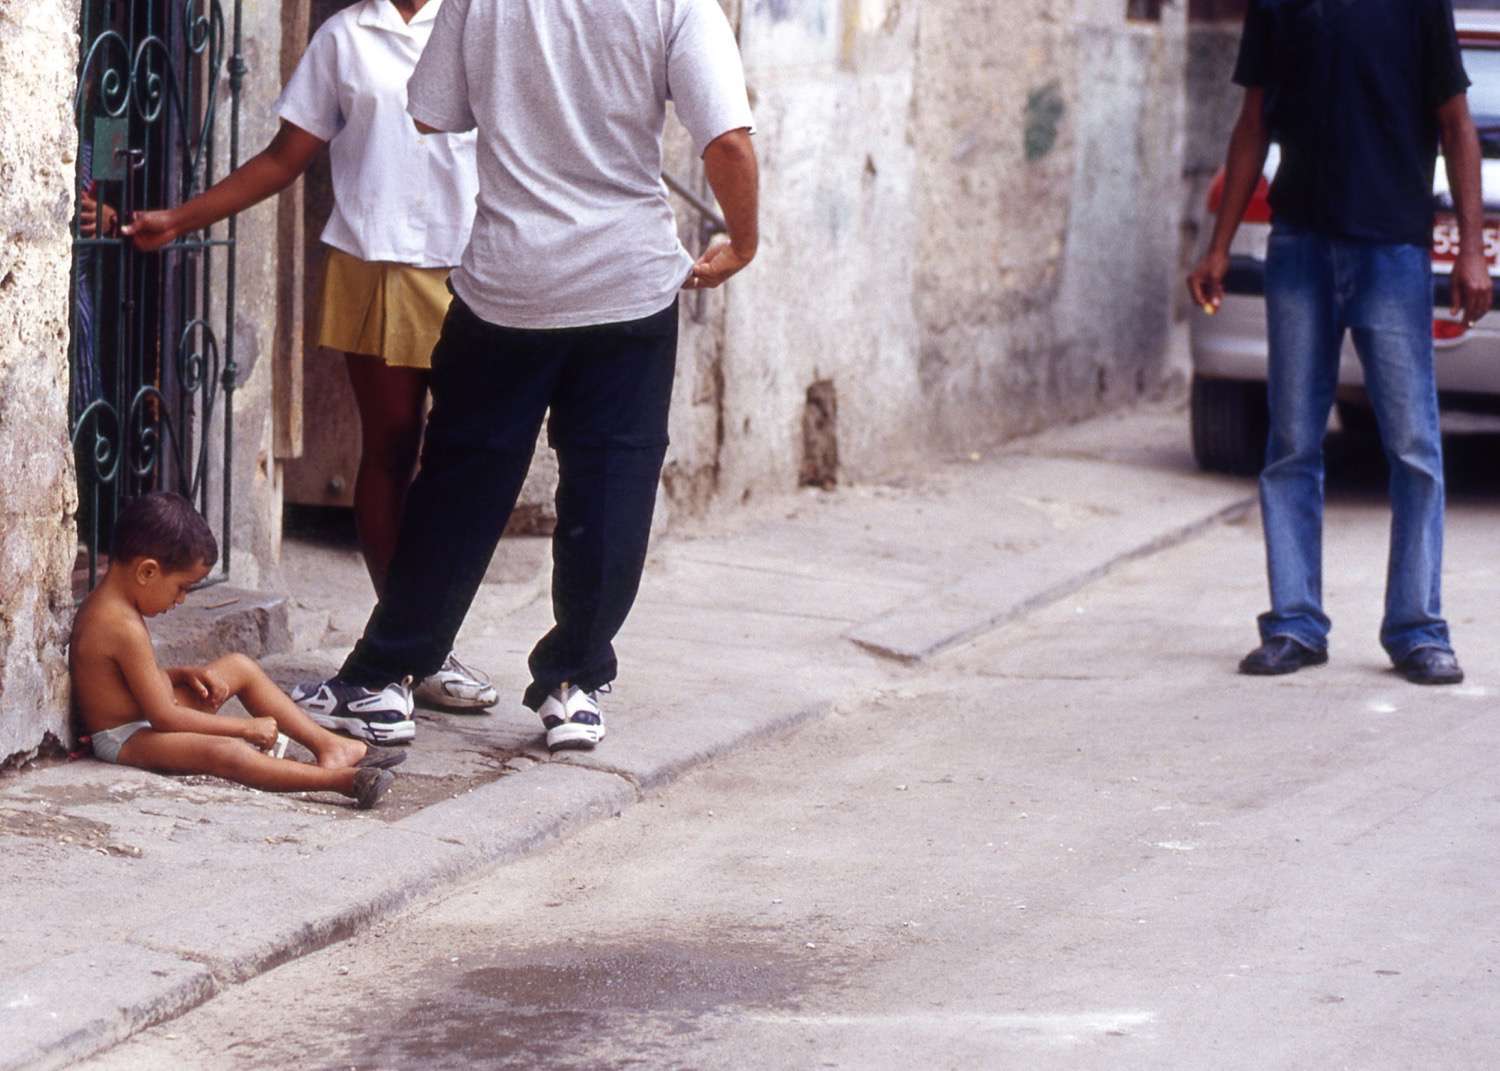 Cuba_street-kid-Cuba089.jpg